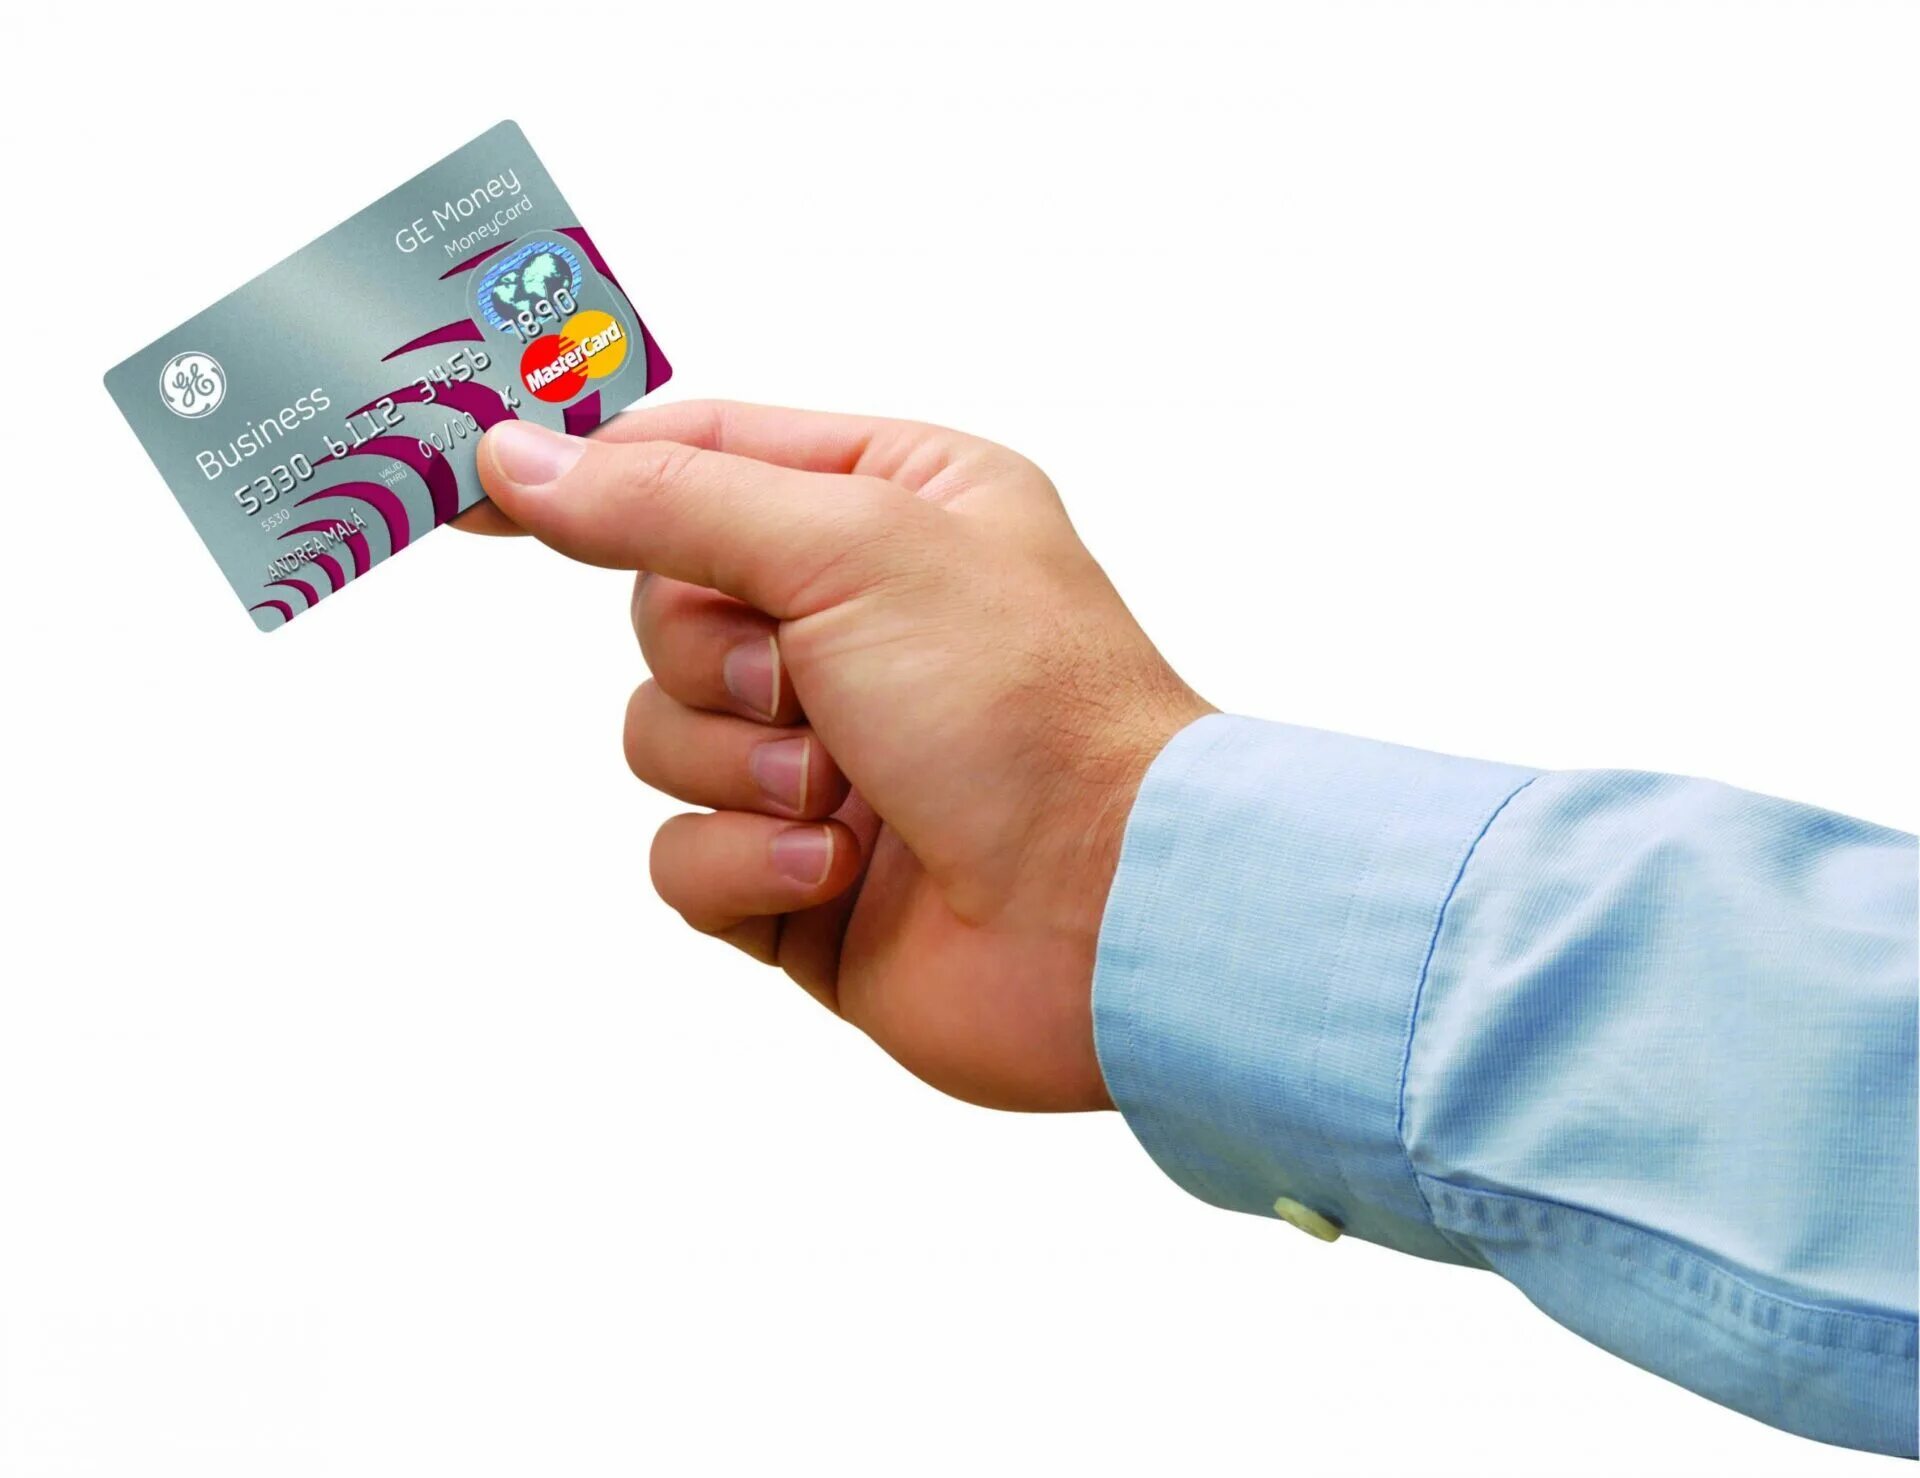 Кредитная карта для покупок. Кредитная карта в руке. Банковская карточка в руке. Карты в руках. Пластиковая карта в руке.